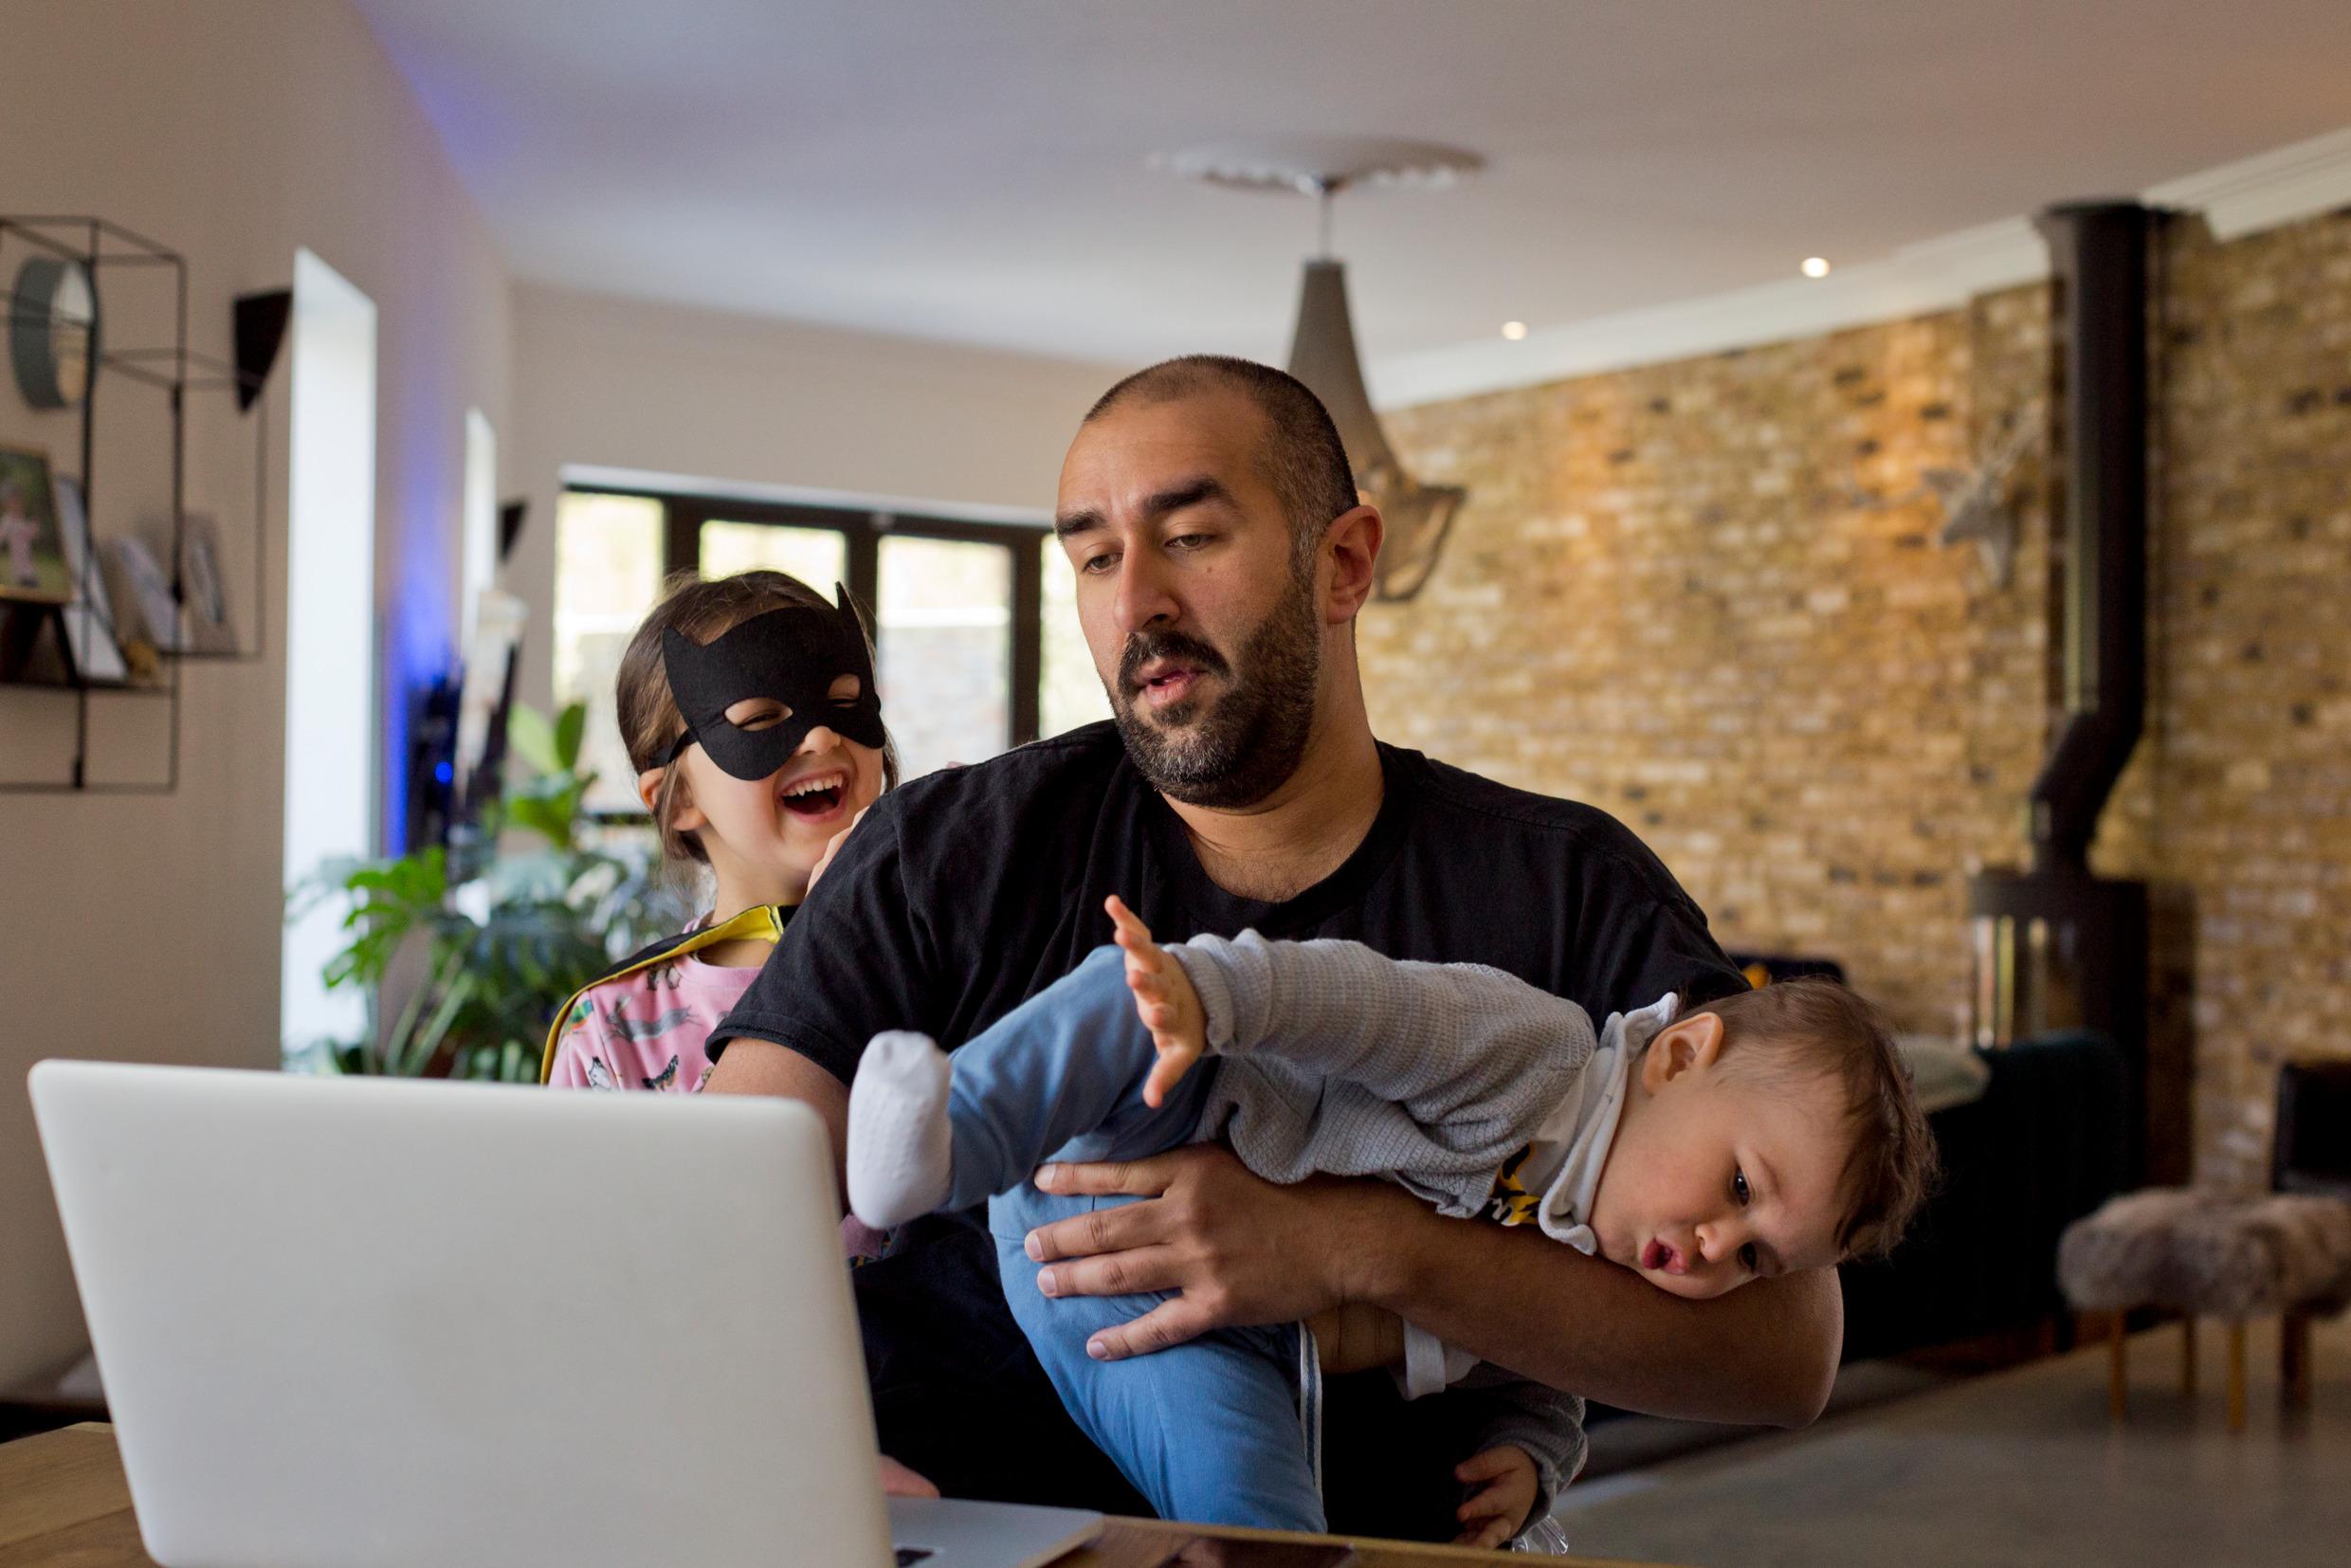 En man står inomhus bakom en dataskärm och håller en bebis på armen samtidigt som ett barn bakom honom pockar på uppmärksamhet.